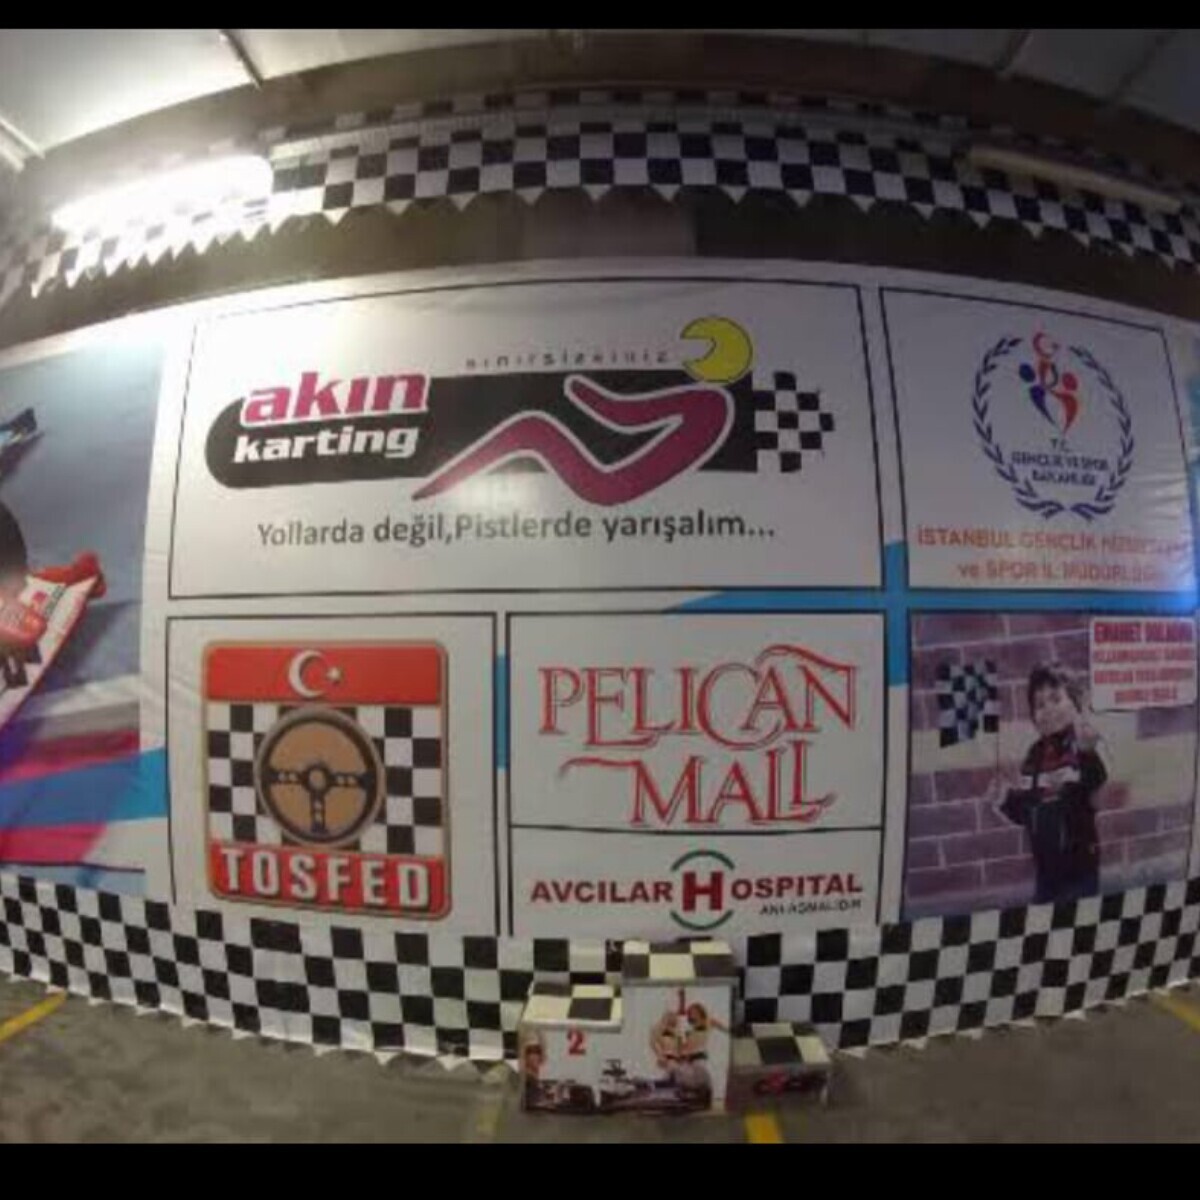 Avcılar Pelican AVM Akın Karting'de 7'den 70'e Adrenalin Dolu Go-Kart Heyecanı